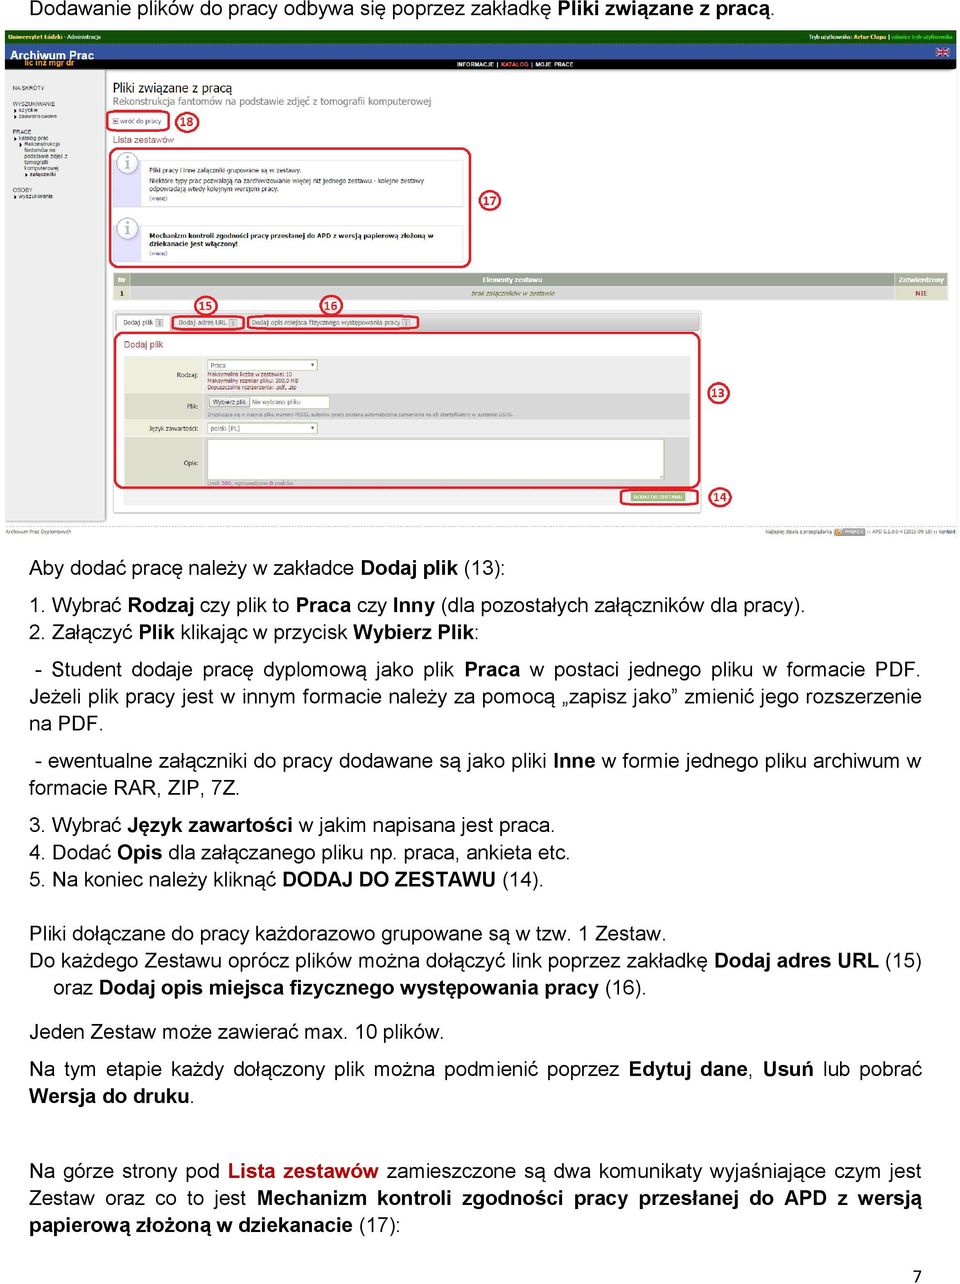 Załączyć Plik klikając w przycisk Wybierz Plik: - Student dodaje pracę dyplomową jako plik Praca w postaci jednego pliku w formacie PDF.